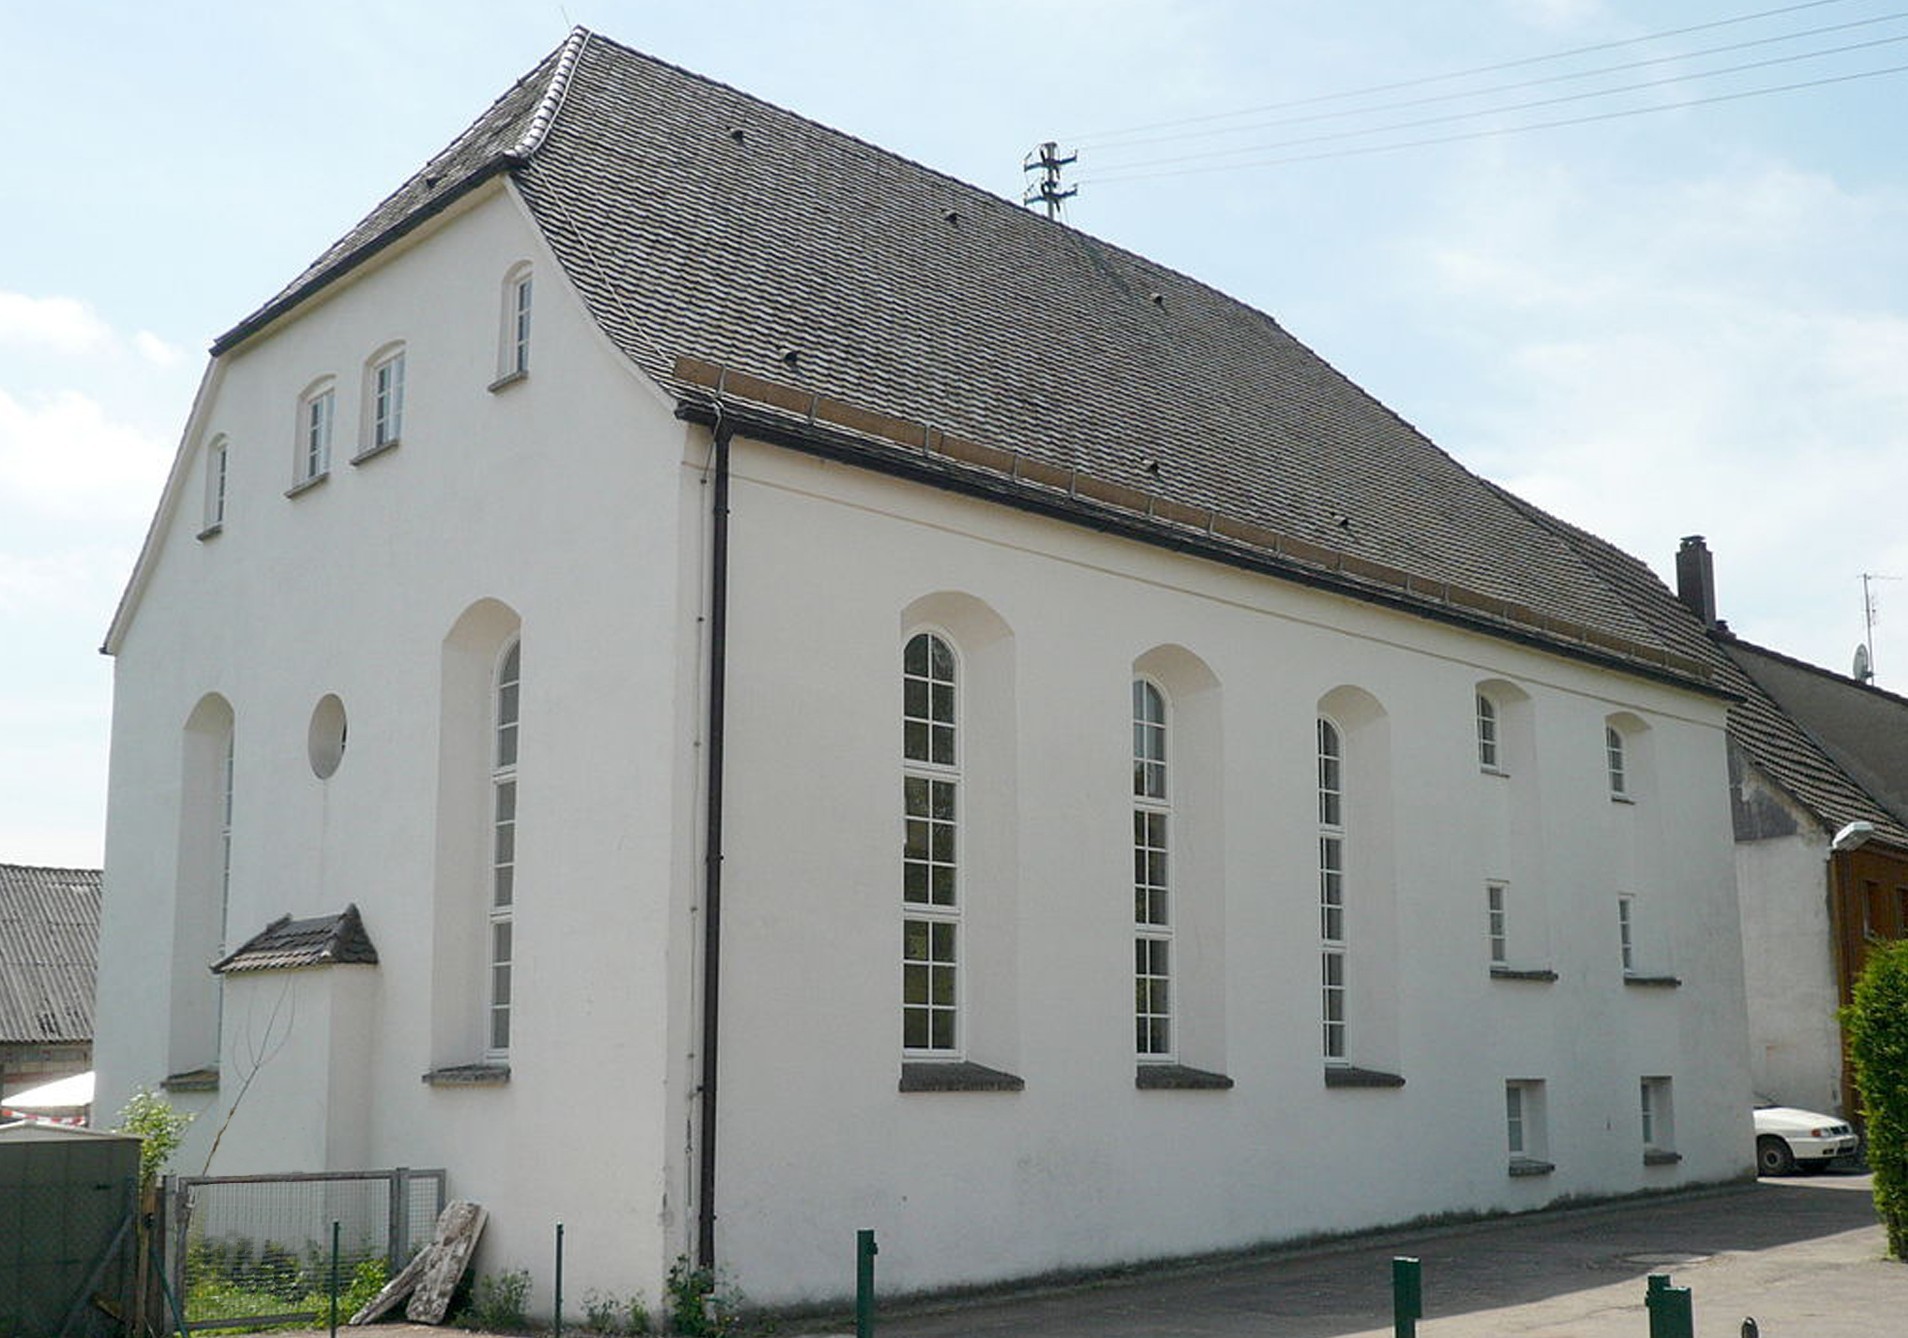 Außenansicht der ehemaligen Synagoge Bopfingen-Oberdorf. Führt zur Unterseite &quot;Bopfingen-Oberdorf&quot;.